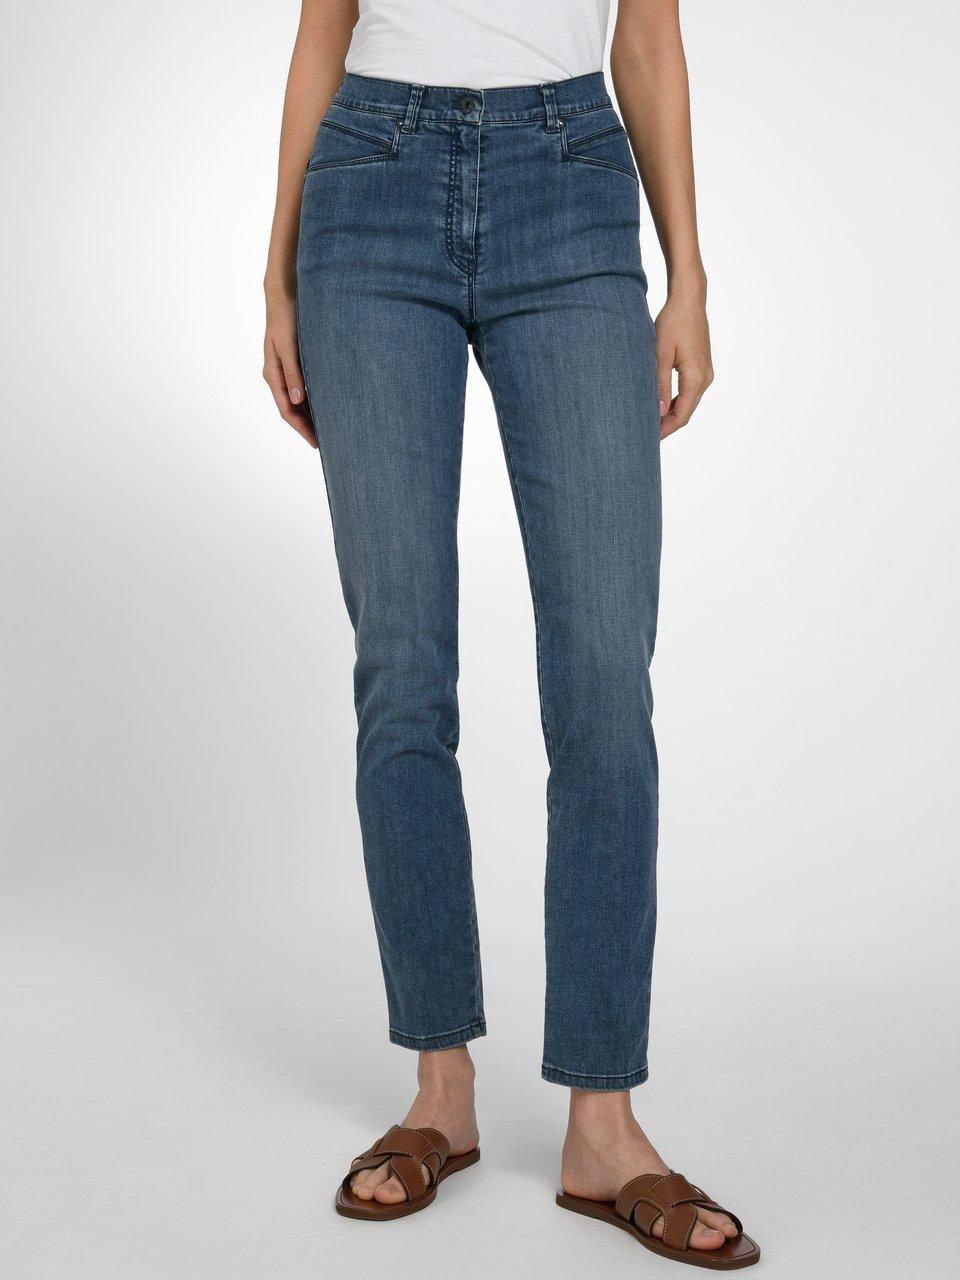 Plus-Zauber-Jeans - blue Raphaela Comfort - Caren denim by Brax Modell Dark